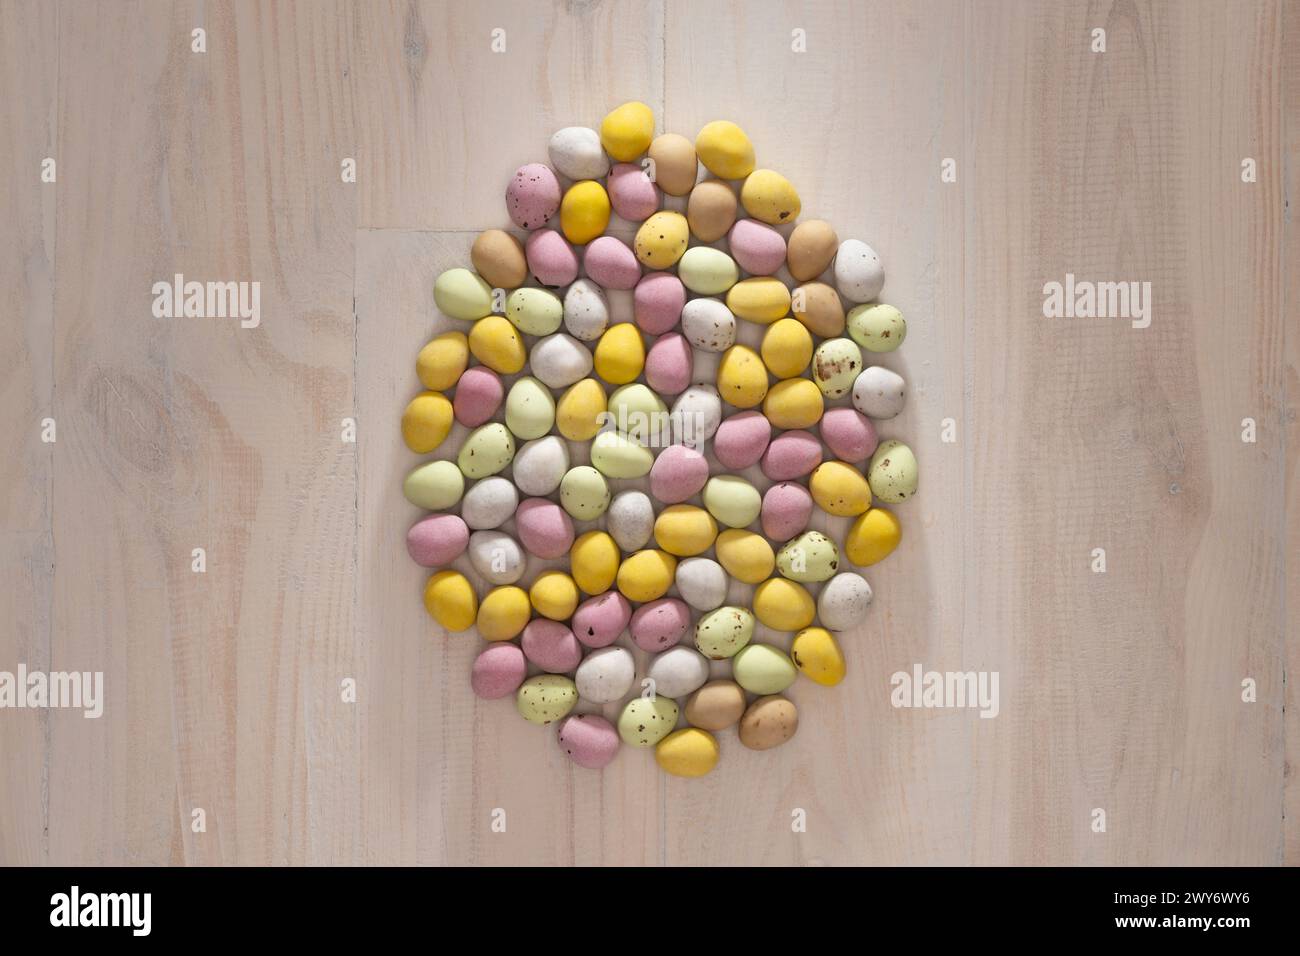 Mini oeufs enrobés de sucre, de couleurs pastel, disposés en forme d'oeuf sur un fond en bois. Banque D'Images